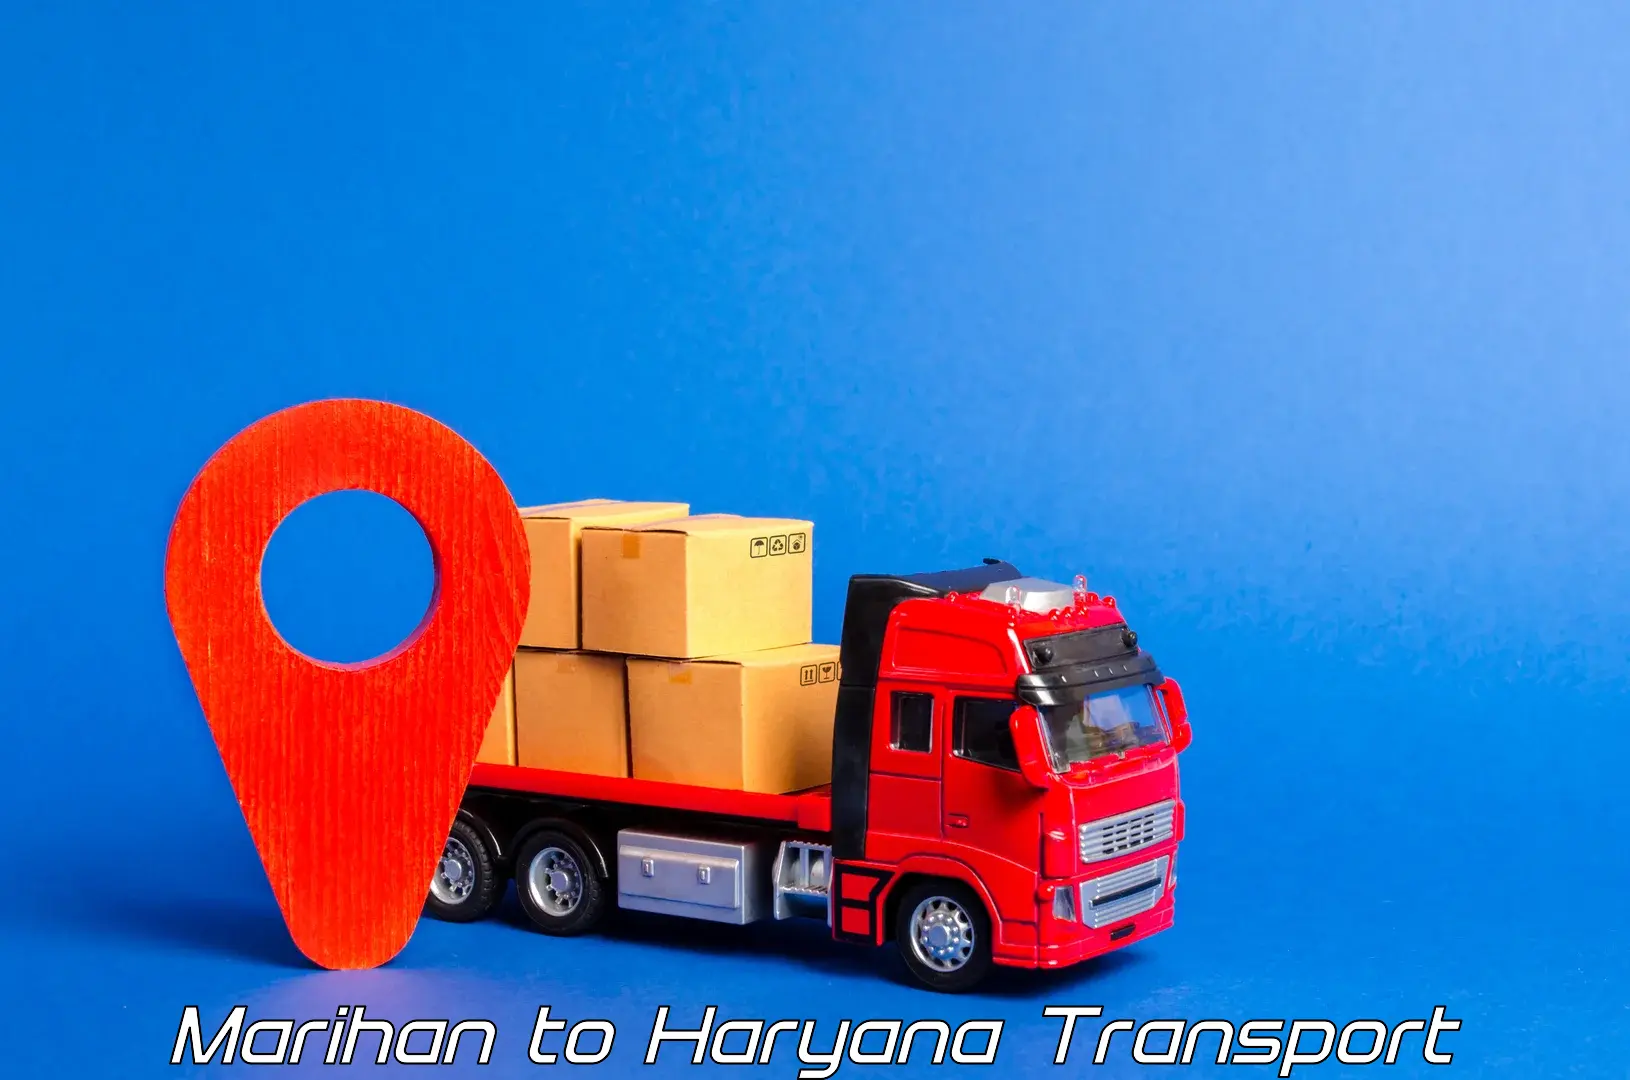 Pick up transport service Marihan to Siwani